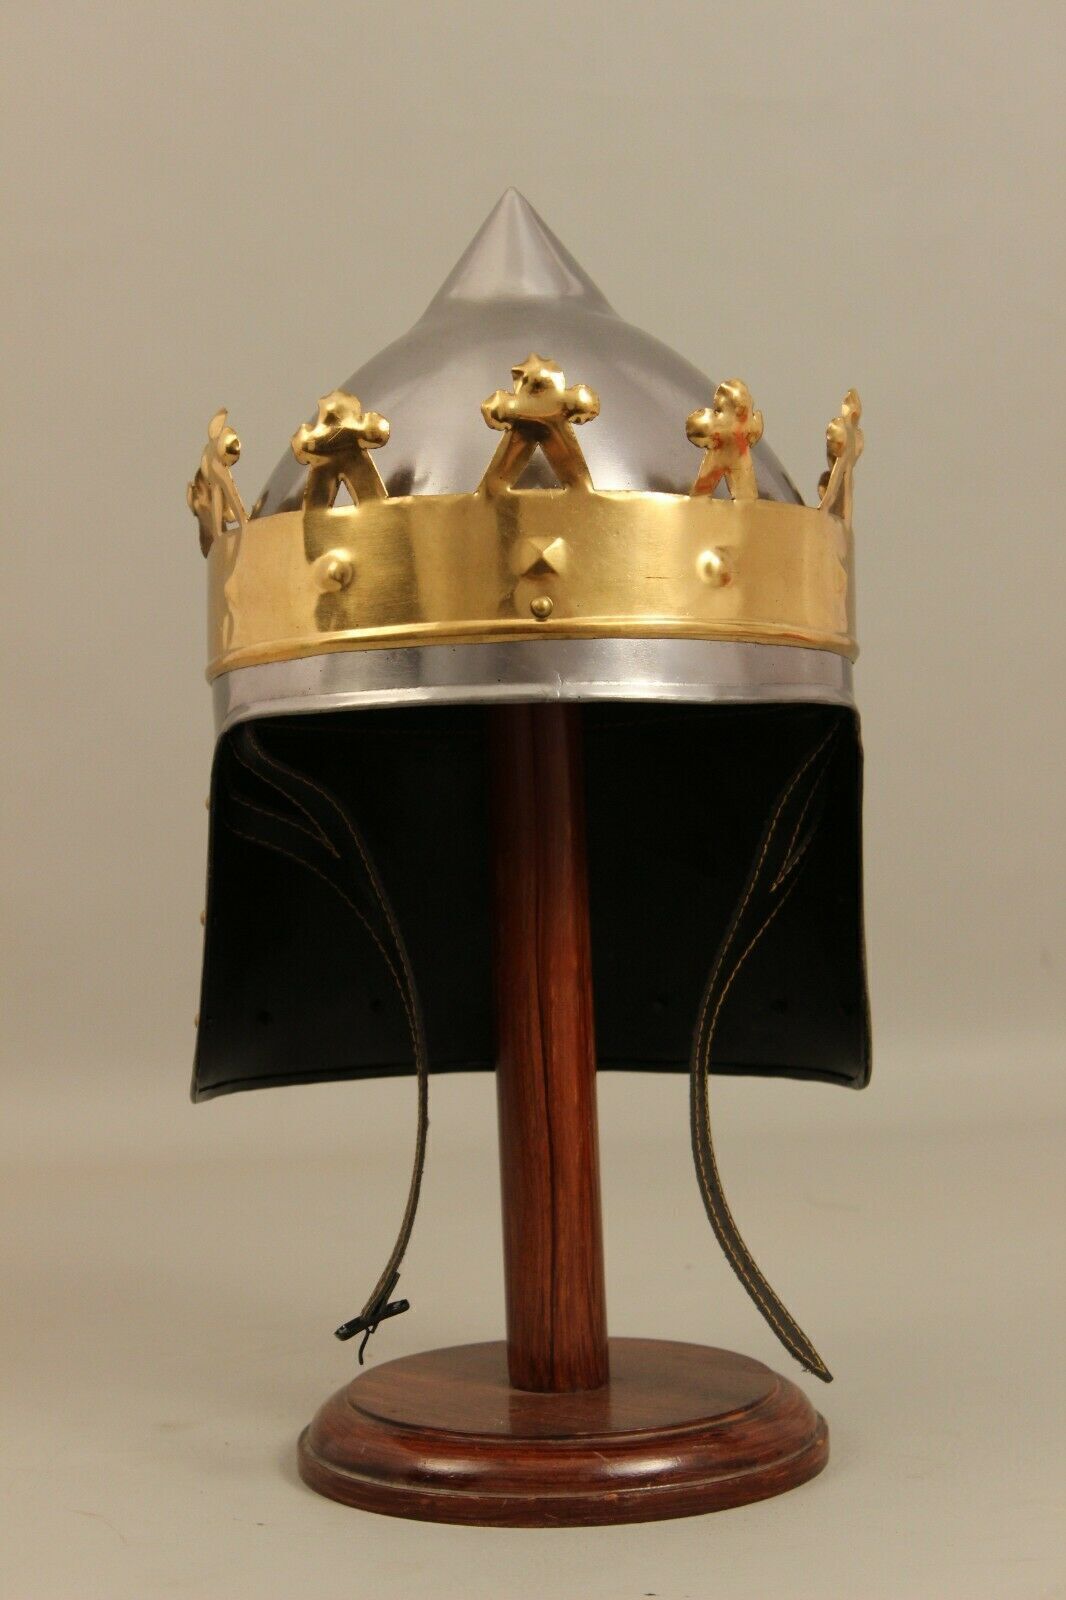 18 Gauge Stahl mittelalterlichen Ritter Könige Rechard Helm Messing Krone Helm Cosplay